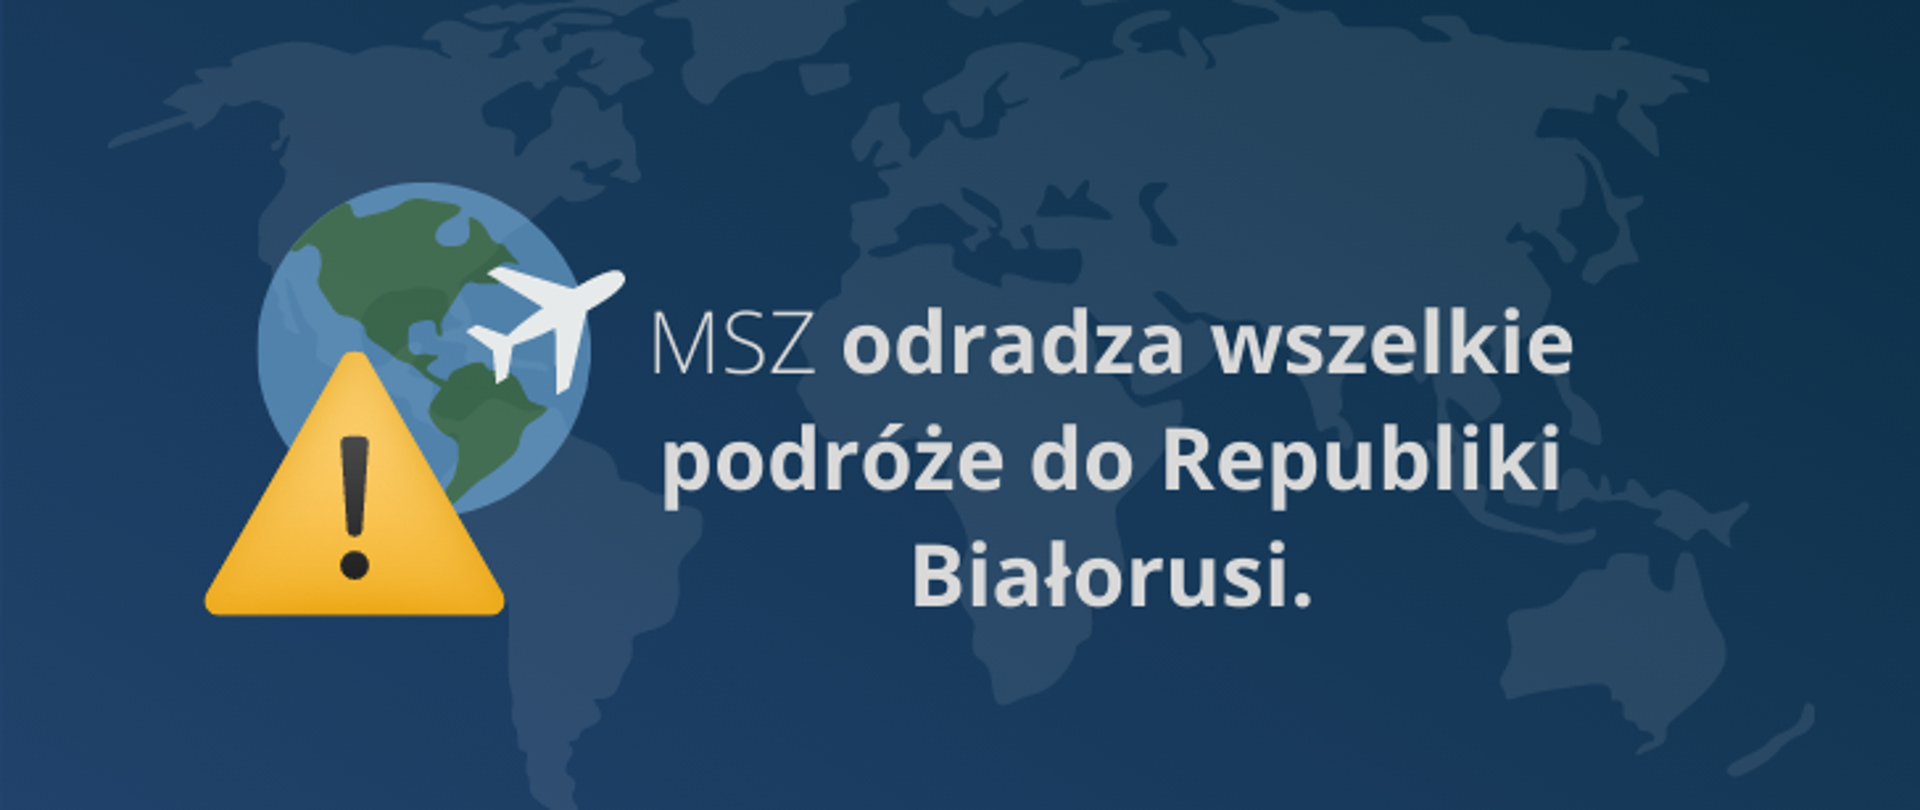 MSZ odradza wszelkie podróże do Republiki Białorusi.